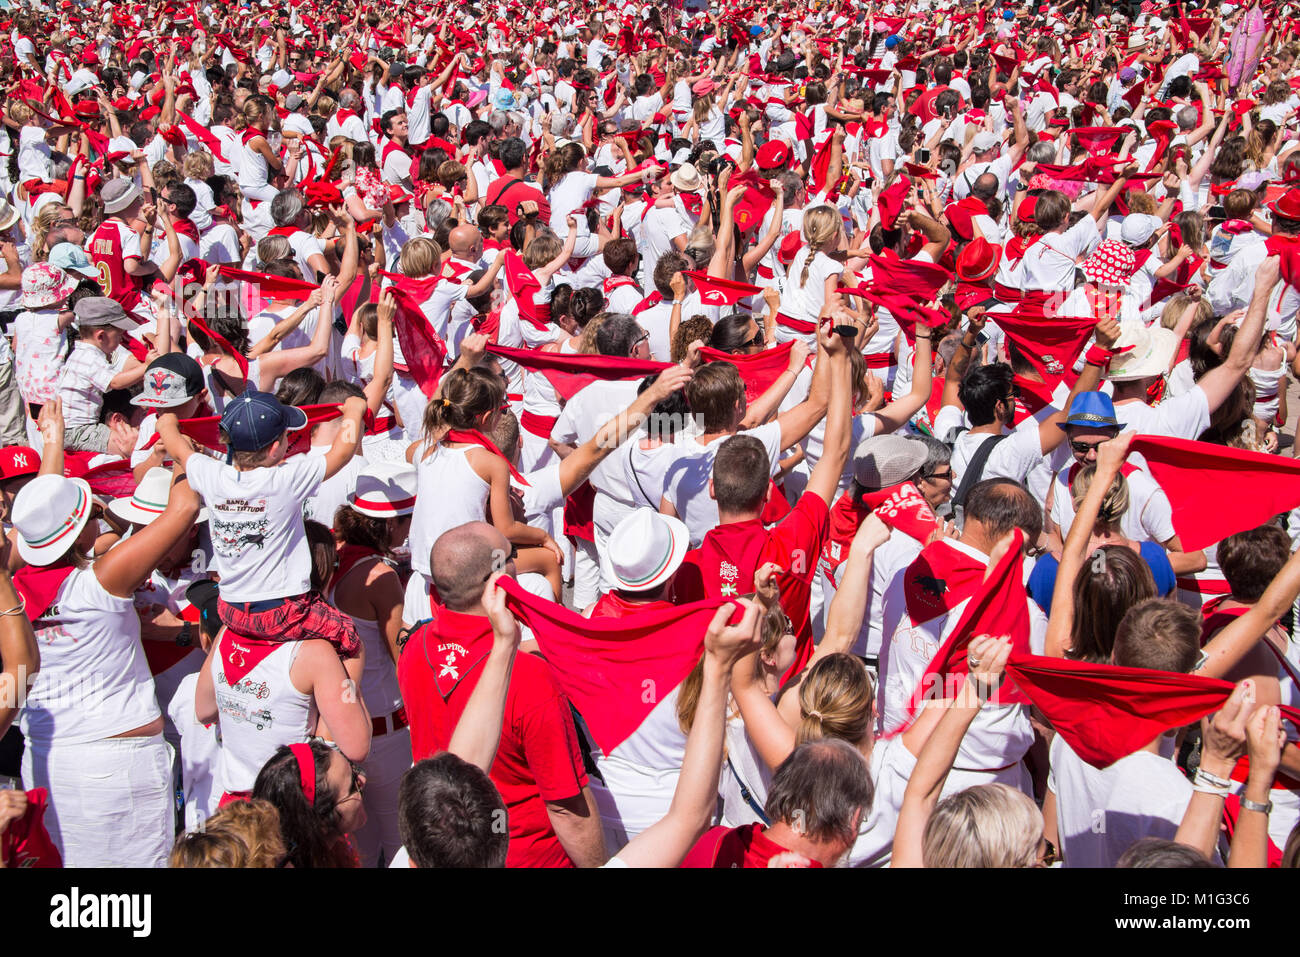 Masse der Leute, gekleidet in weiß und rot bei den Sommerfestspielen von Bayonne (Fêtes de Bayonne), Frankreich Stockfoto